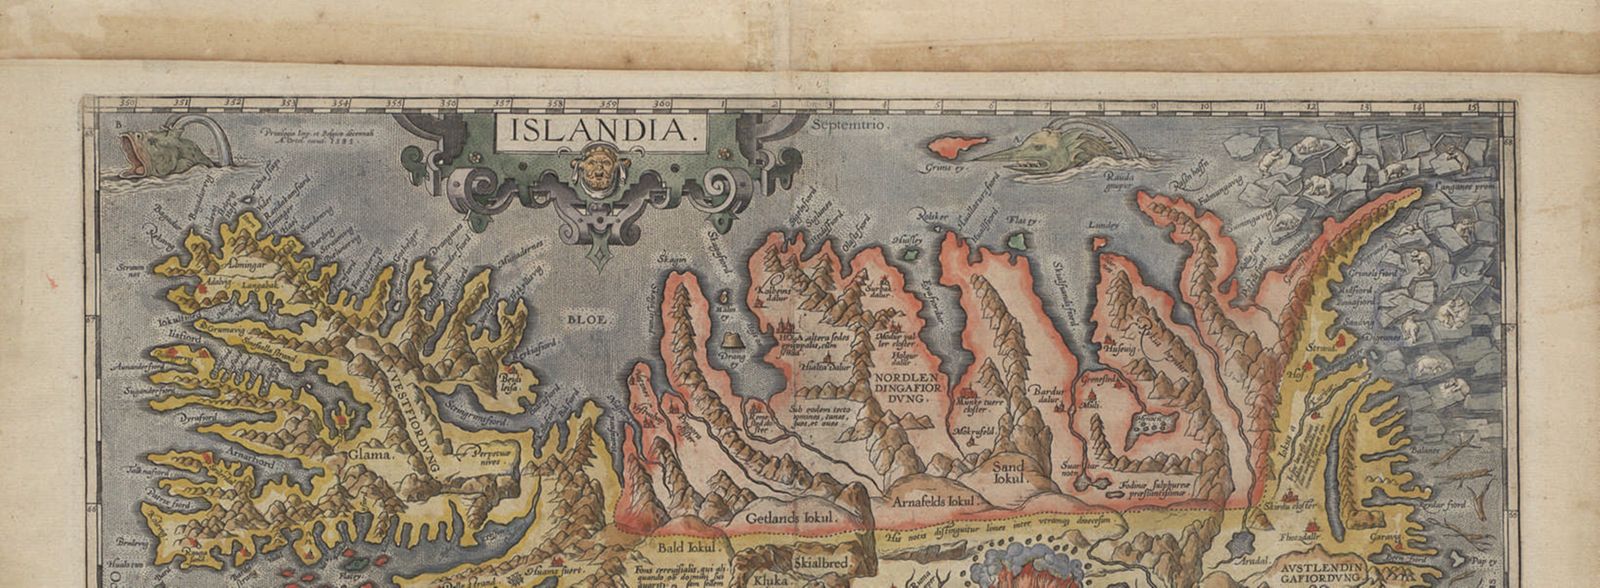 Bishop Gudbrandur Thorláksson's map of Iceland | 1590